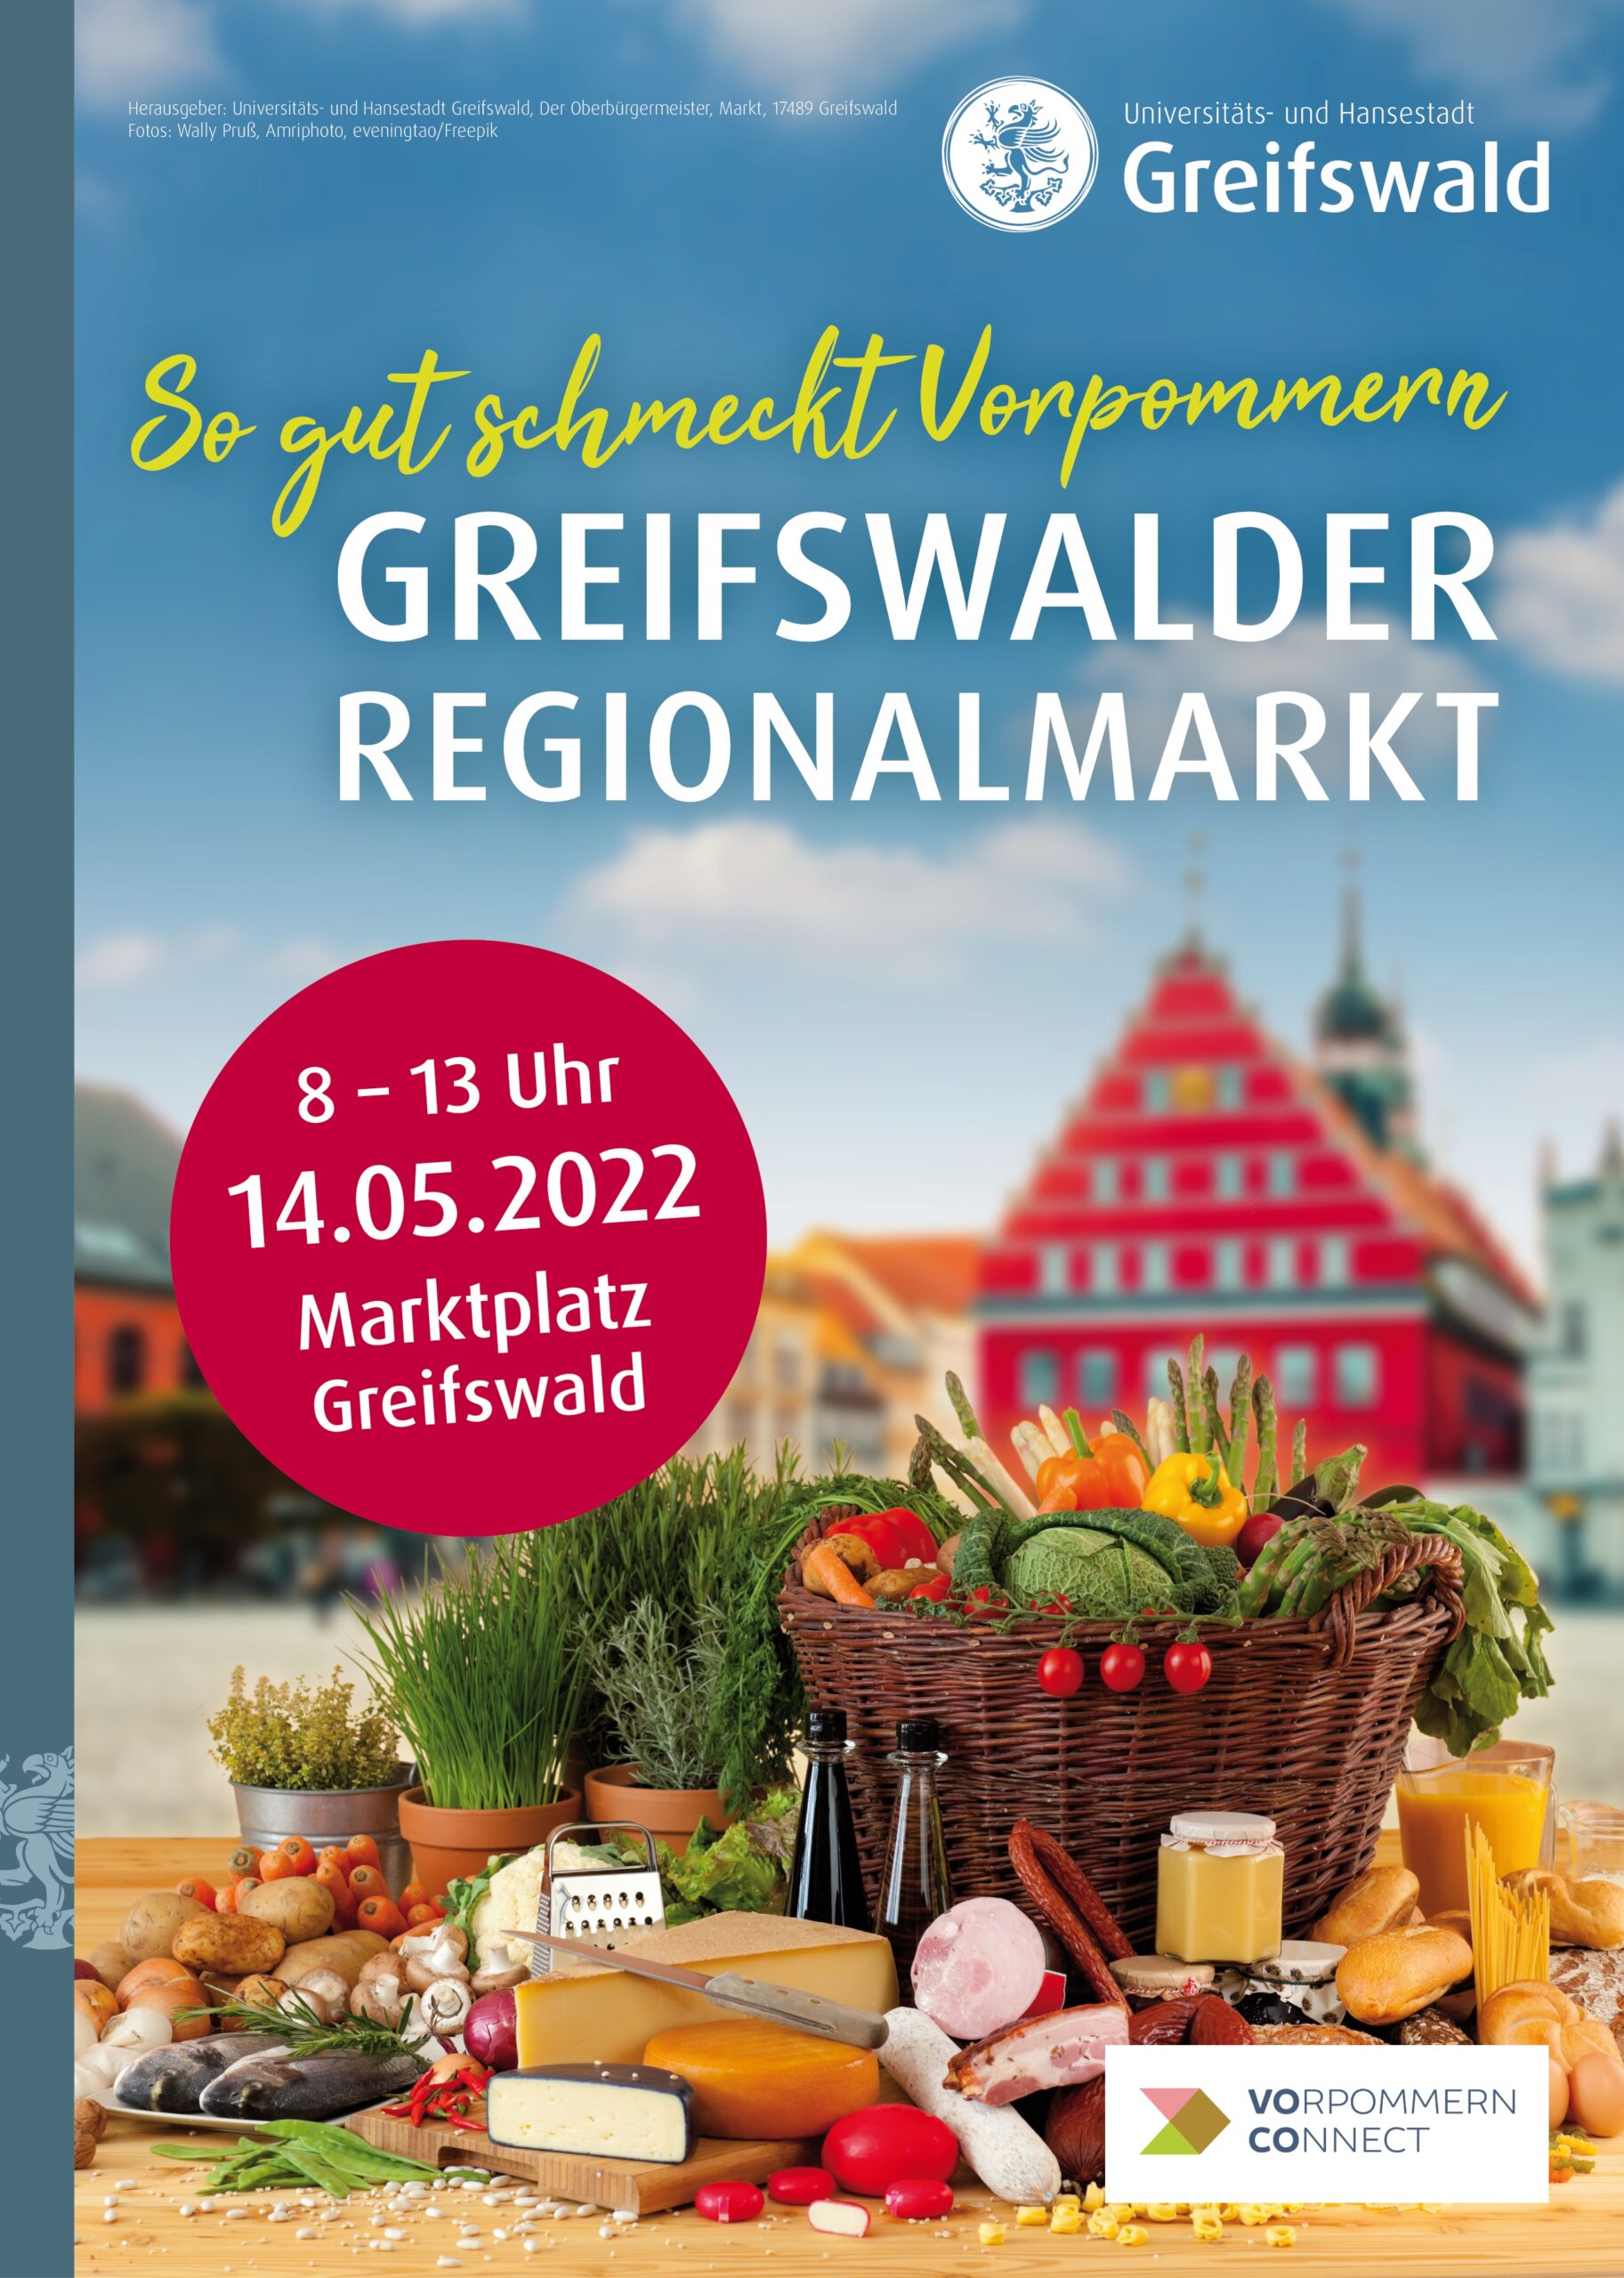 Regionalmarkt_Bild_Social_Media